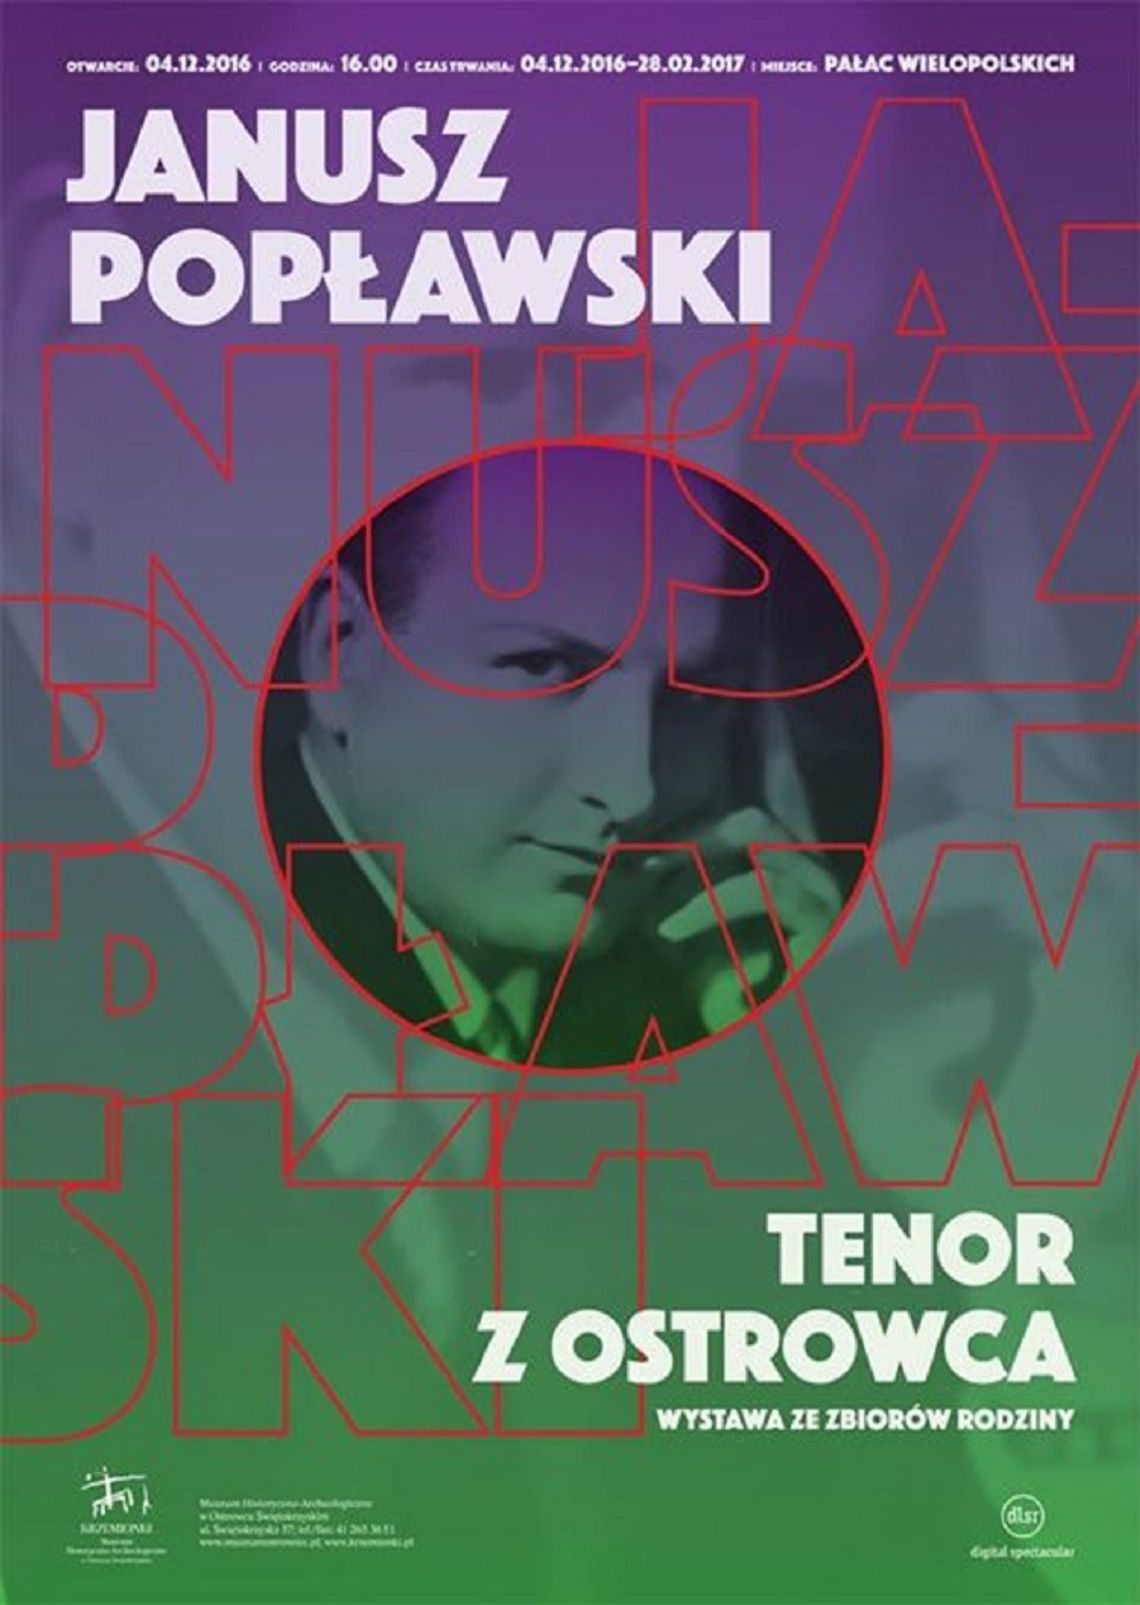 Janusz Popławski - tenor z Ostrowca. Wystawa ze zbiorów rodziny